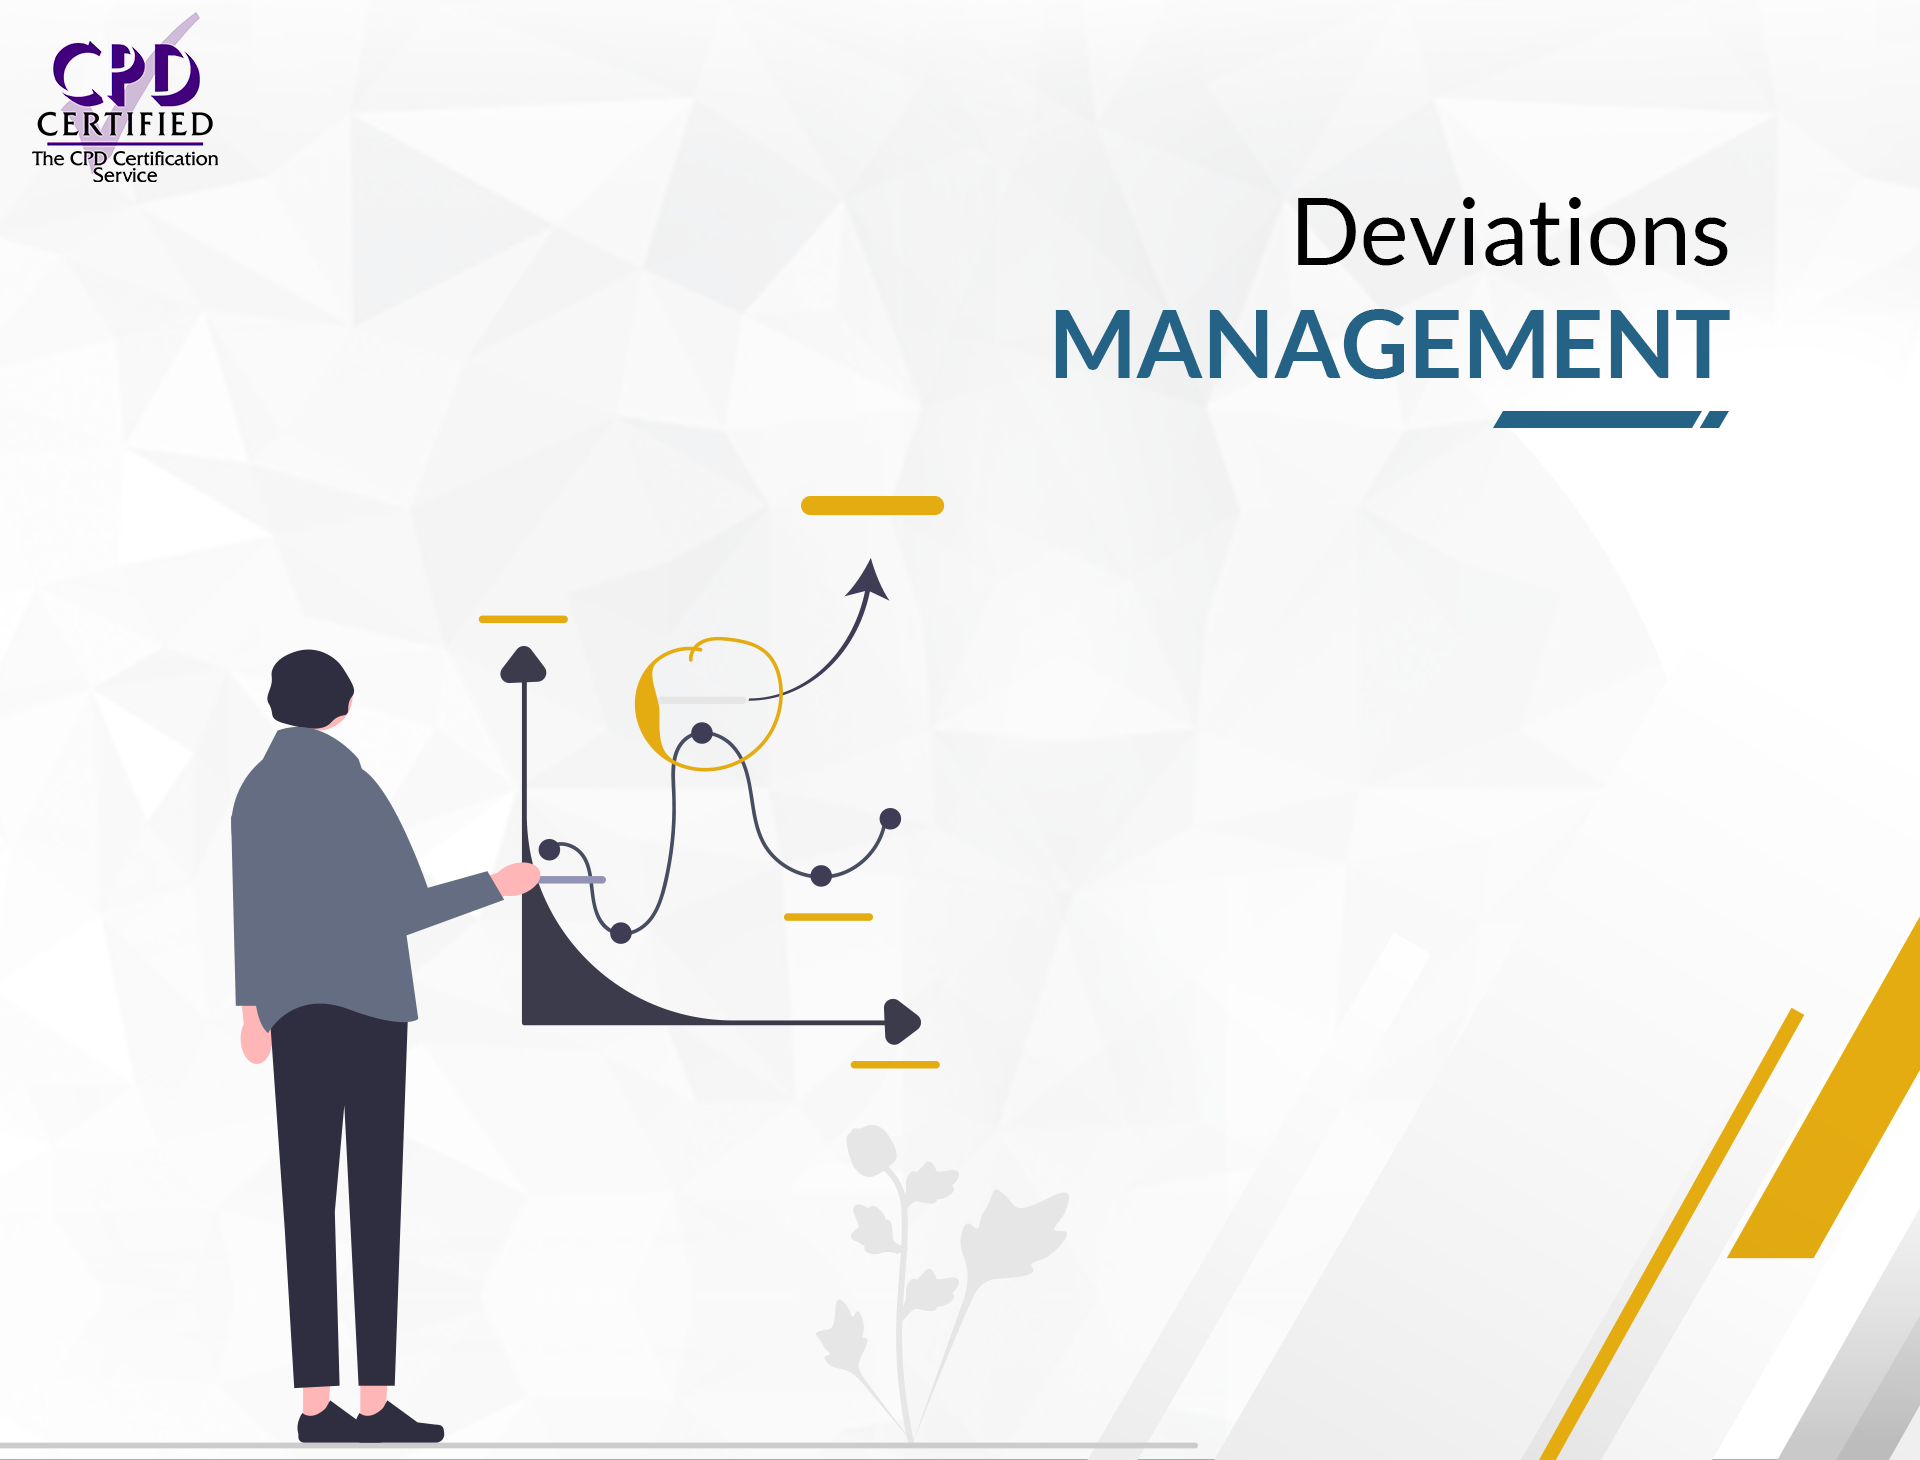 Deviations Management - Complete